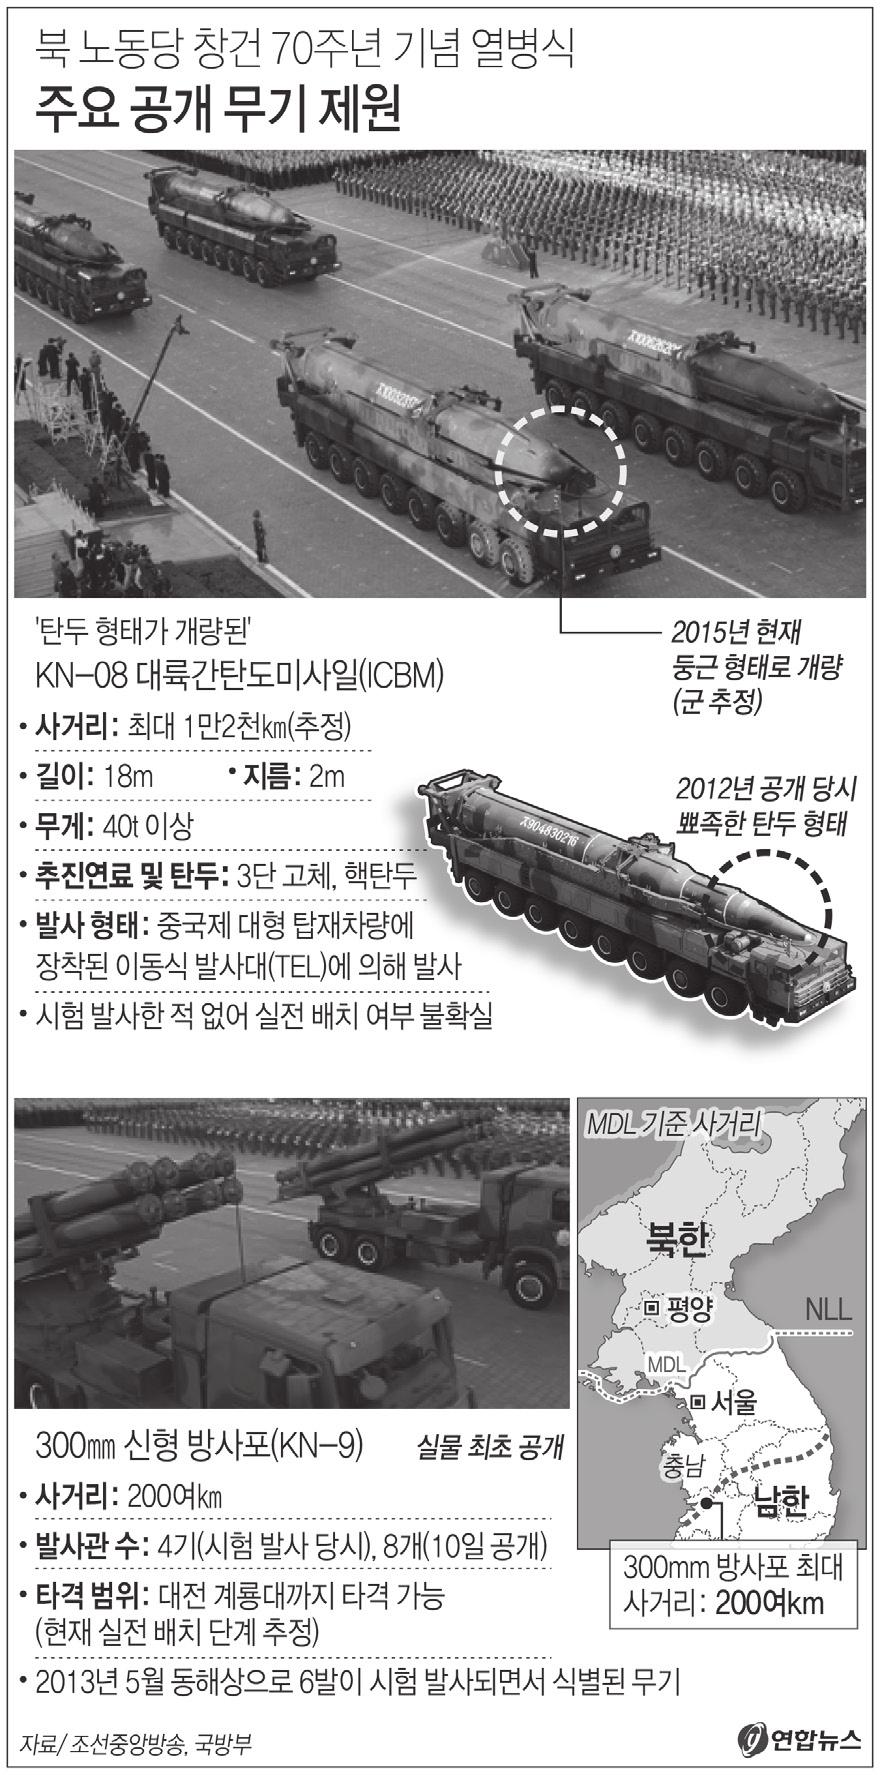 북한은작년부터신형잠수함에탄도미사일발사용수직발사관을장착하기위한지상, 해상시험을시작했다. 이런과정을거친수직발사관을일단잠수함에장착한것으로분석되고있다. 우리군보다 10 년이상앞서잠수함에수직발사관을장착한수준에도달한셈이다. 우리해군은오는 2027 년부터 2030 년까지수직발사관을탑재한 3 천 t 급잠수함 6 척을전력화할예정이기때문이다.